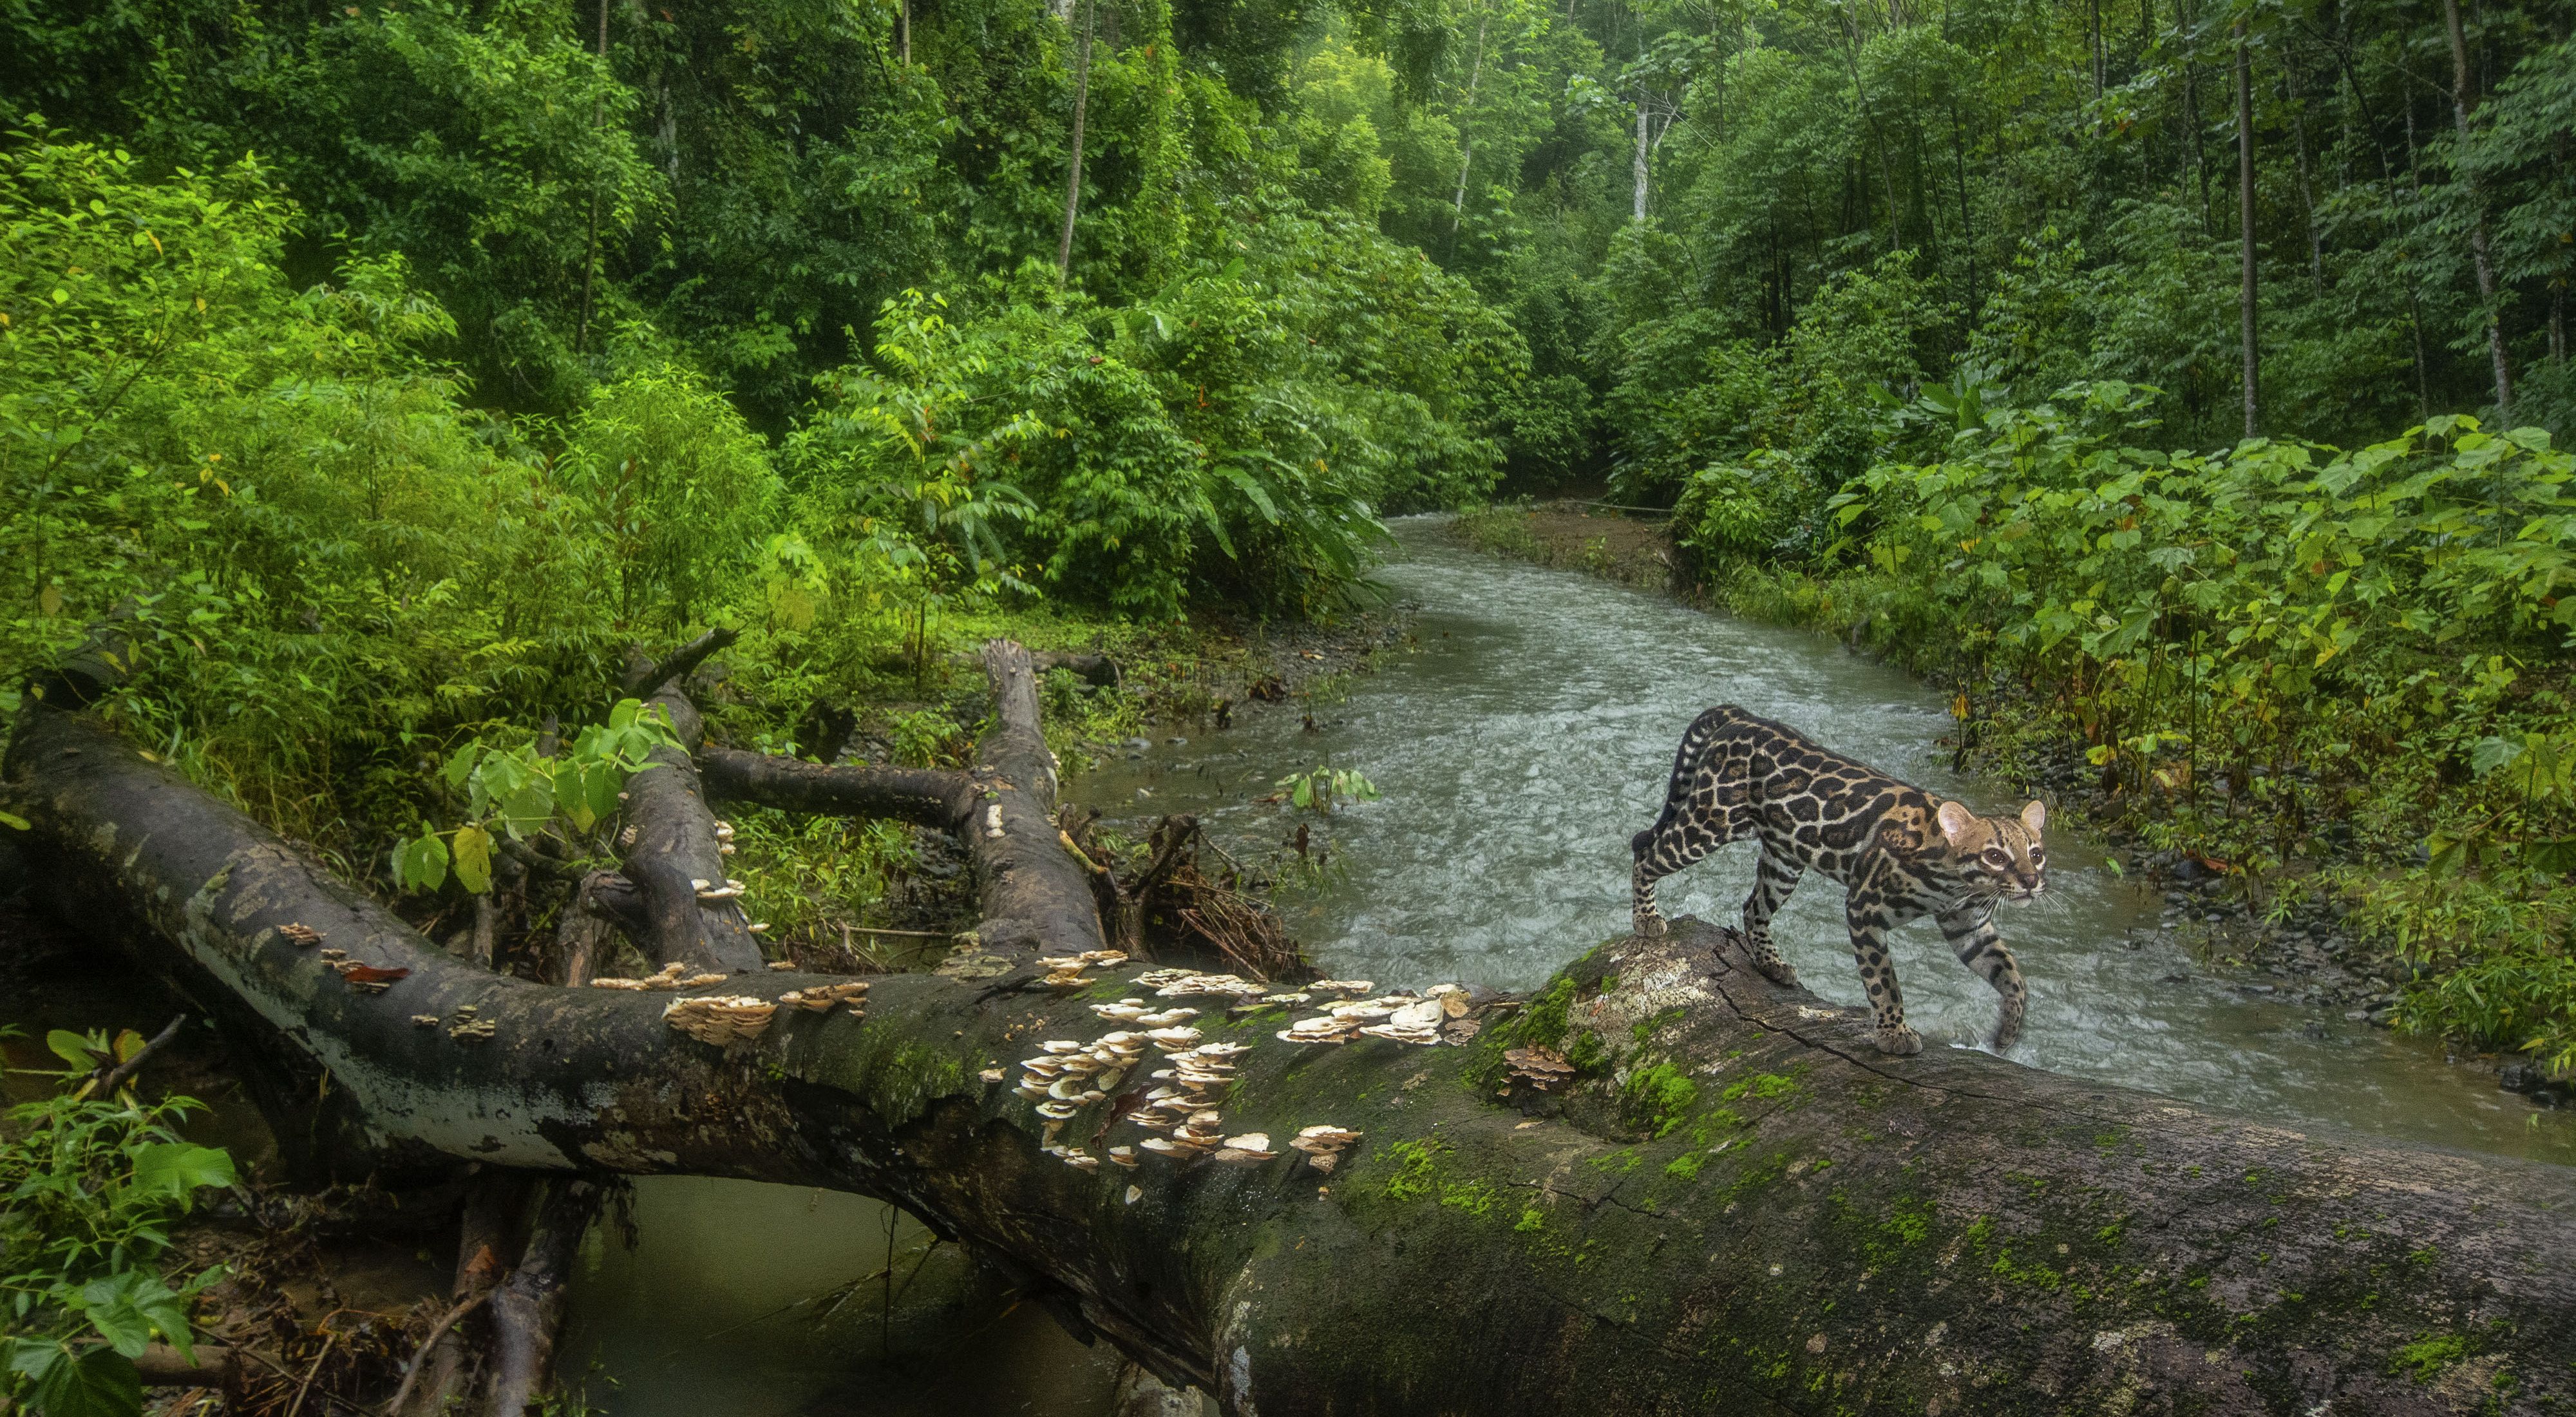 An ocelot uses a fallen tree to cross a creek in a forest